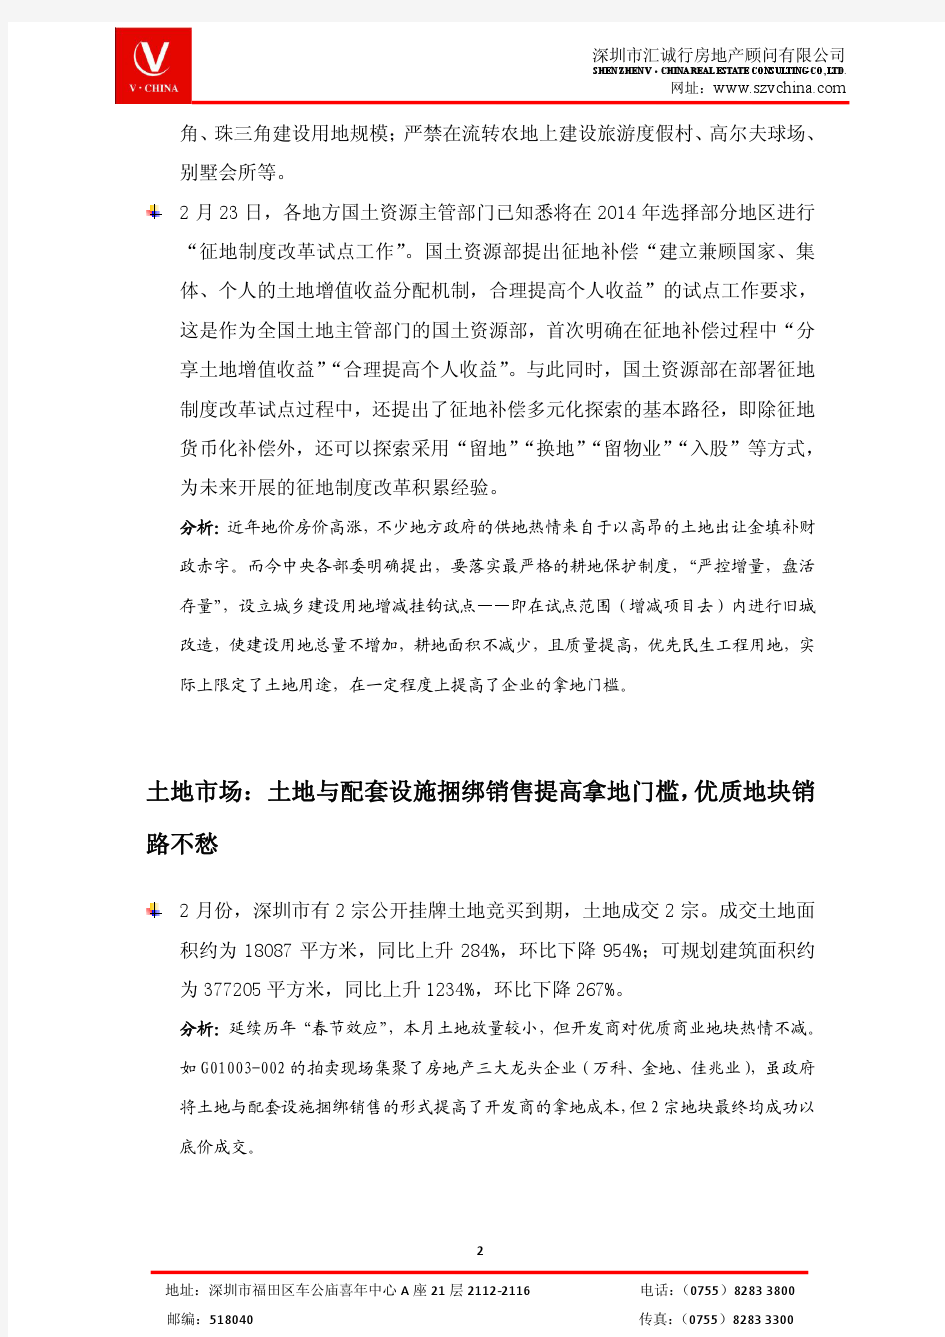 深圳市商业地产市场月报(2014年2月)